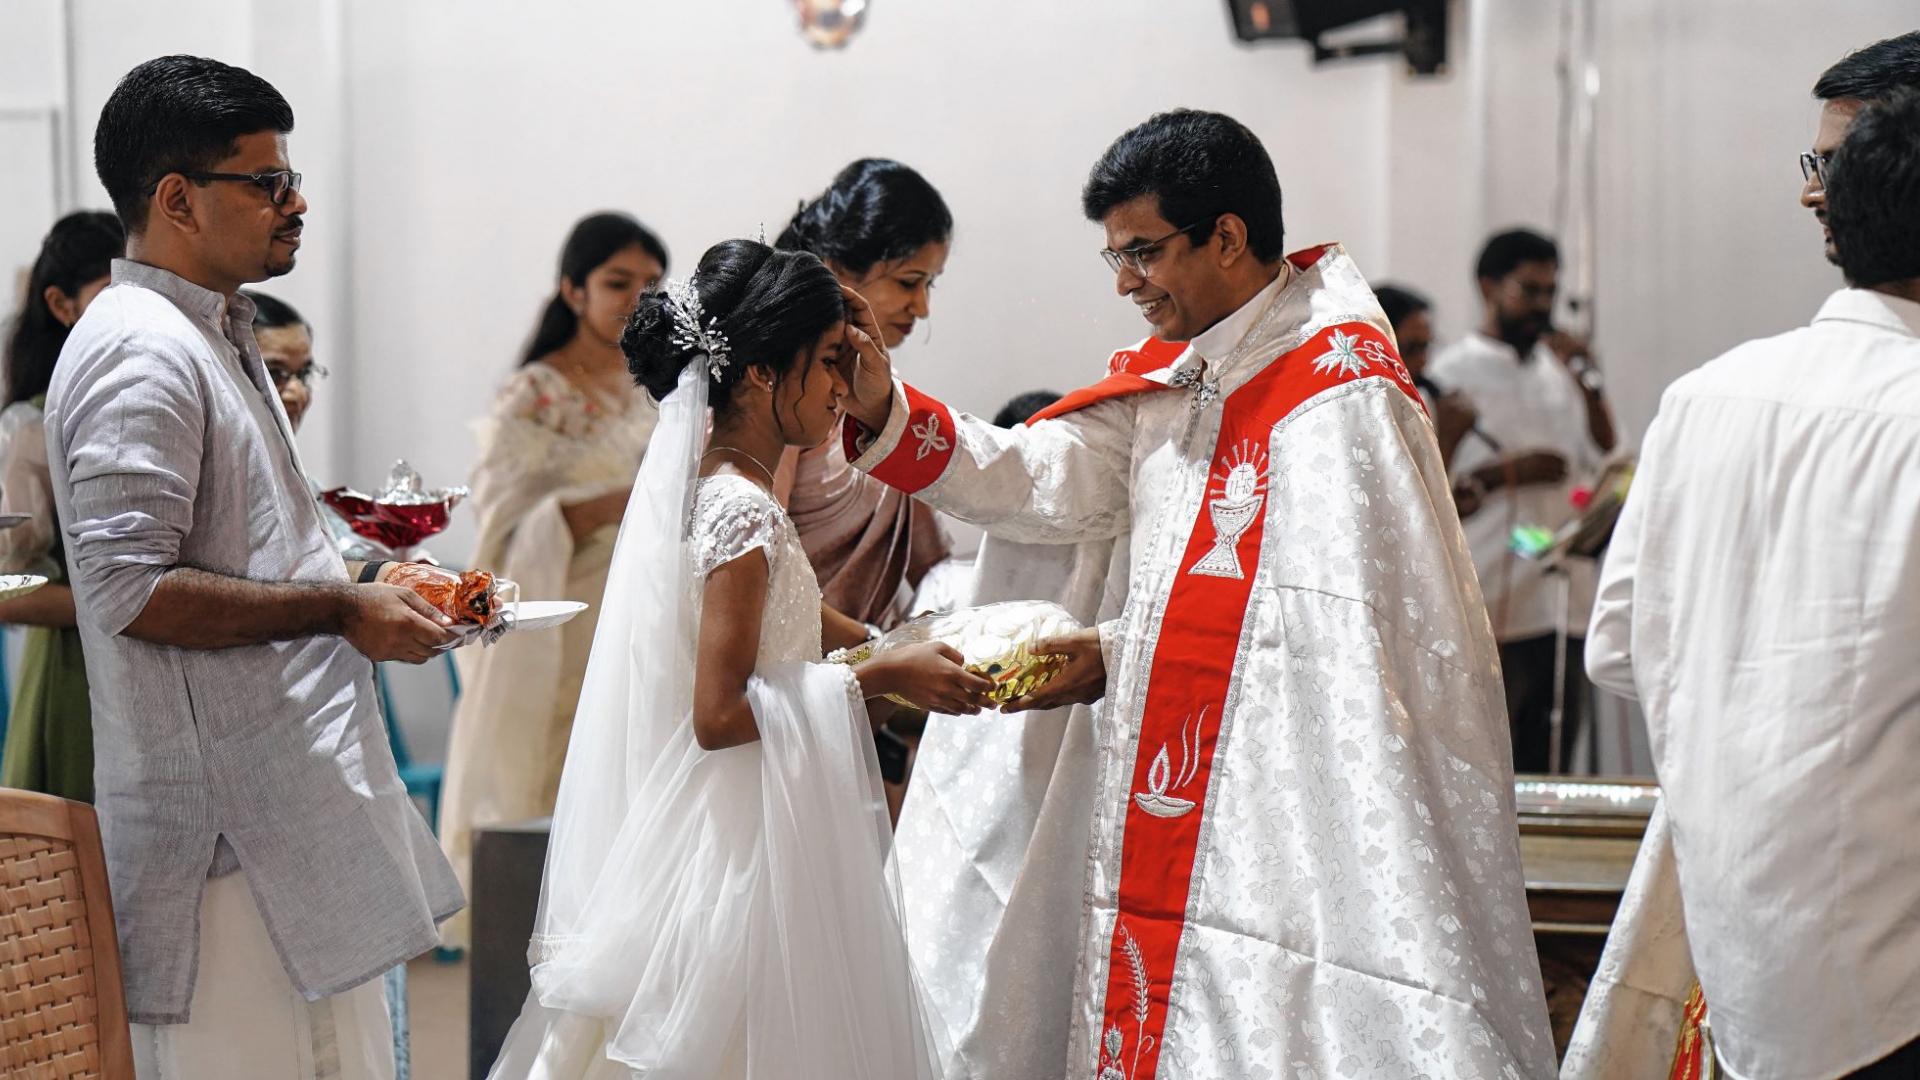 Jyothish Joy bei der Erstkommunionfeier seiner Nichte